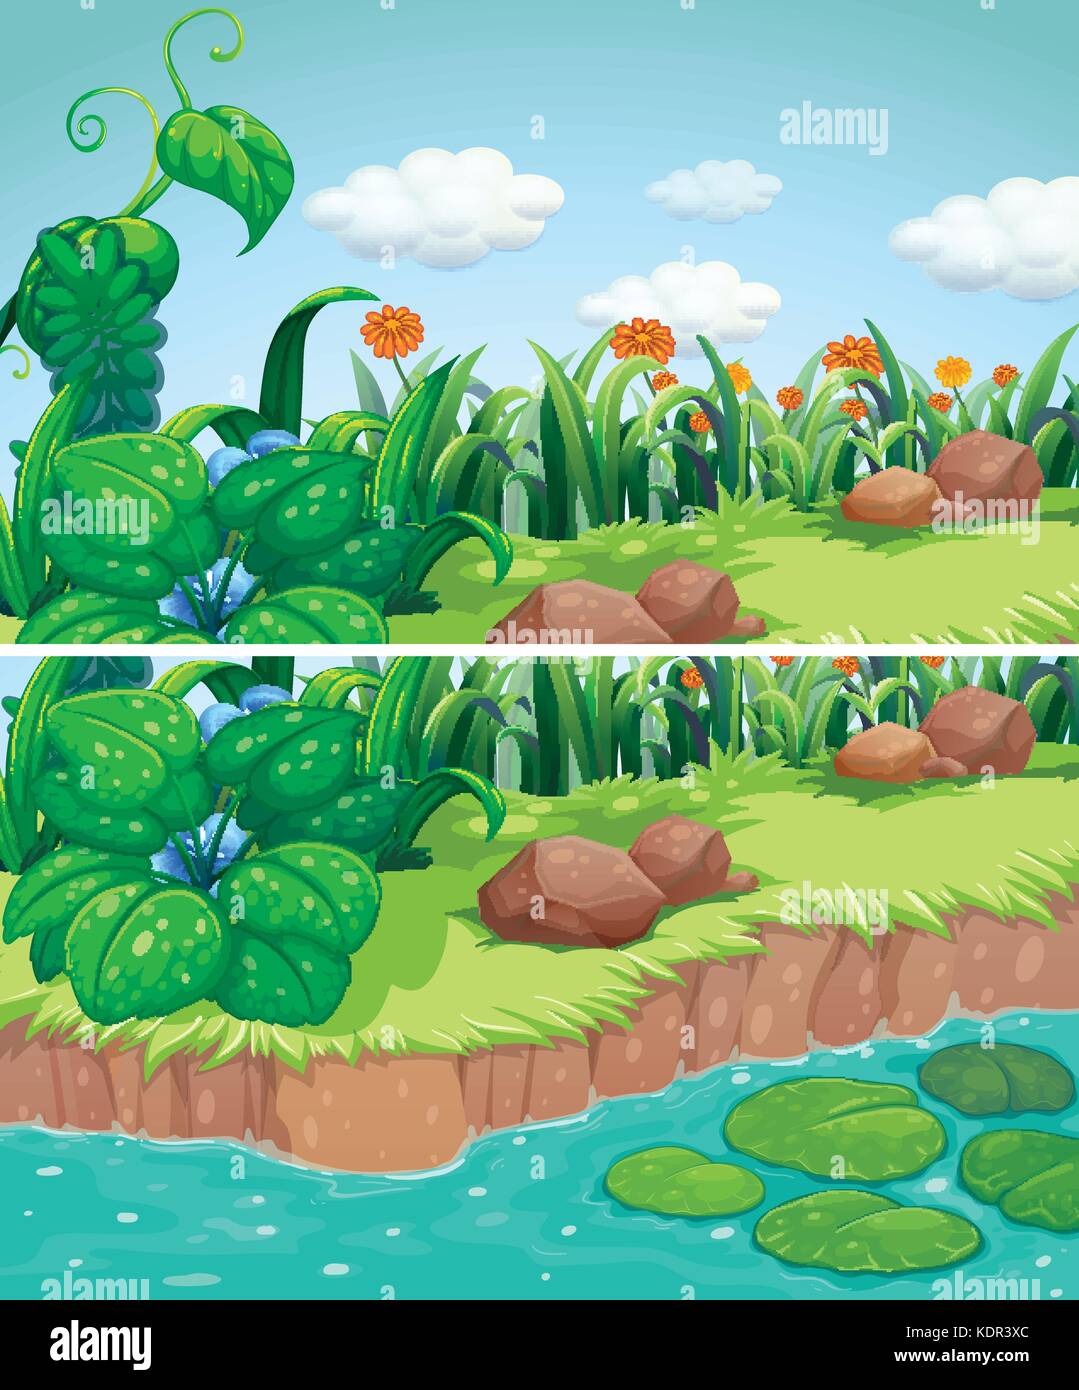 Deux scènes de parc avec des fleurs et de l'illustration de la rivière Illustration de Vecteur